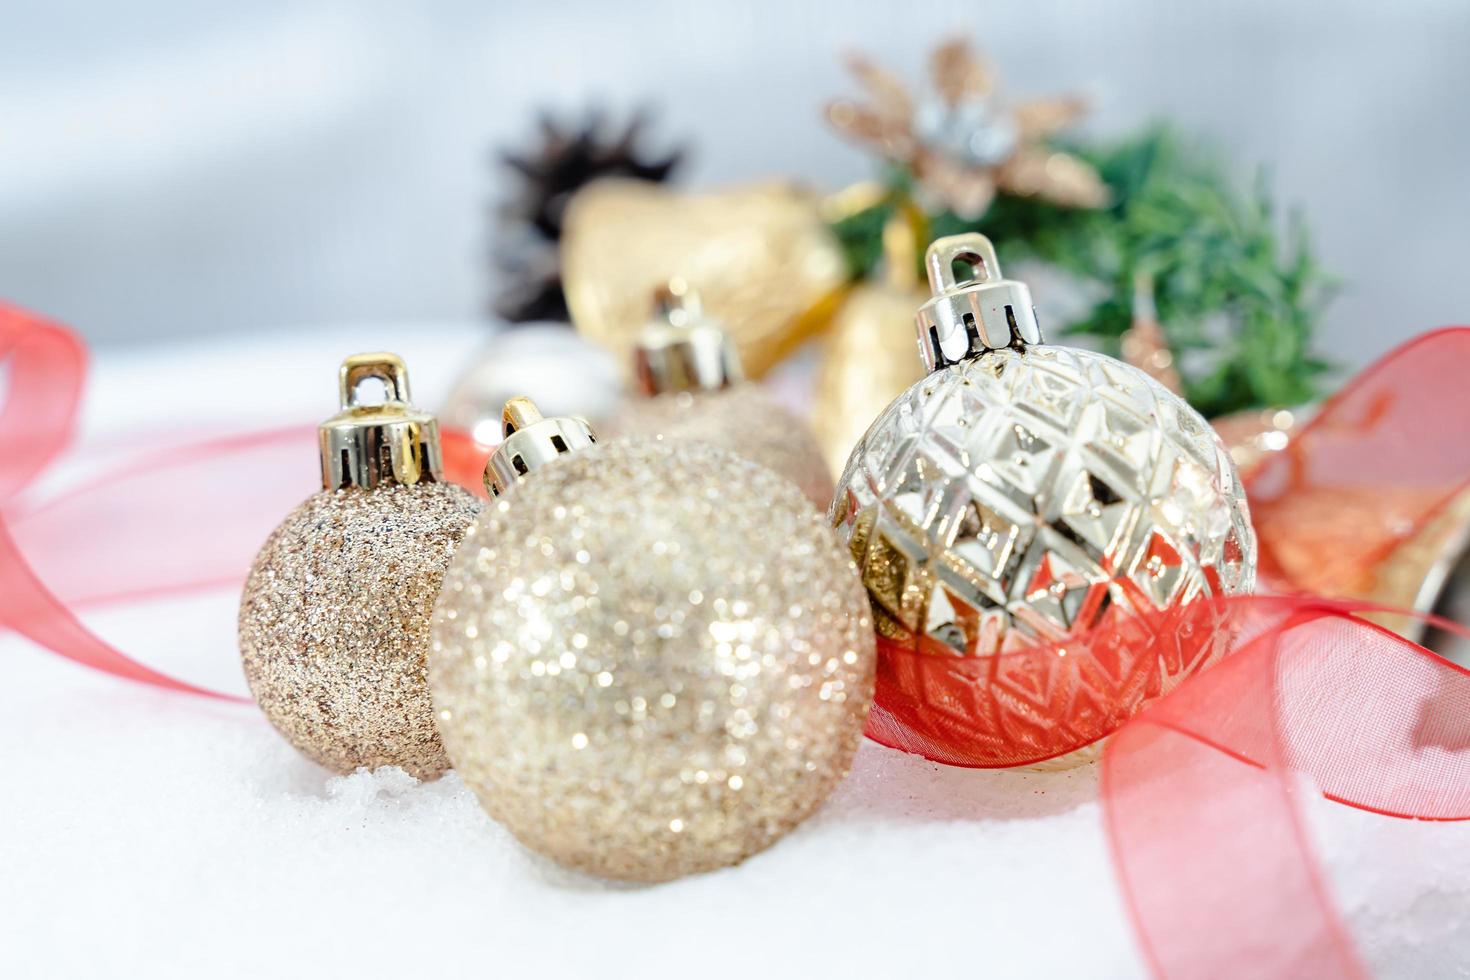 Kerstmis van winter - Kerstmis ballen met lint Aan sneeuw, winter vakantie concept. Kerstmis rood ballen, gouden ballen, pijnboom en sneeuwvlokken decoraties in sneeuw achtergrond foto